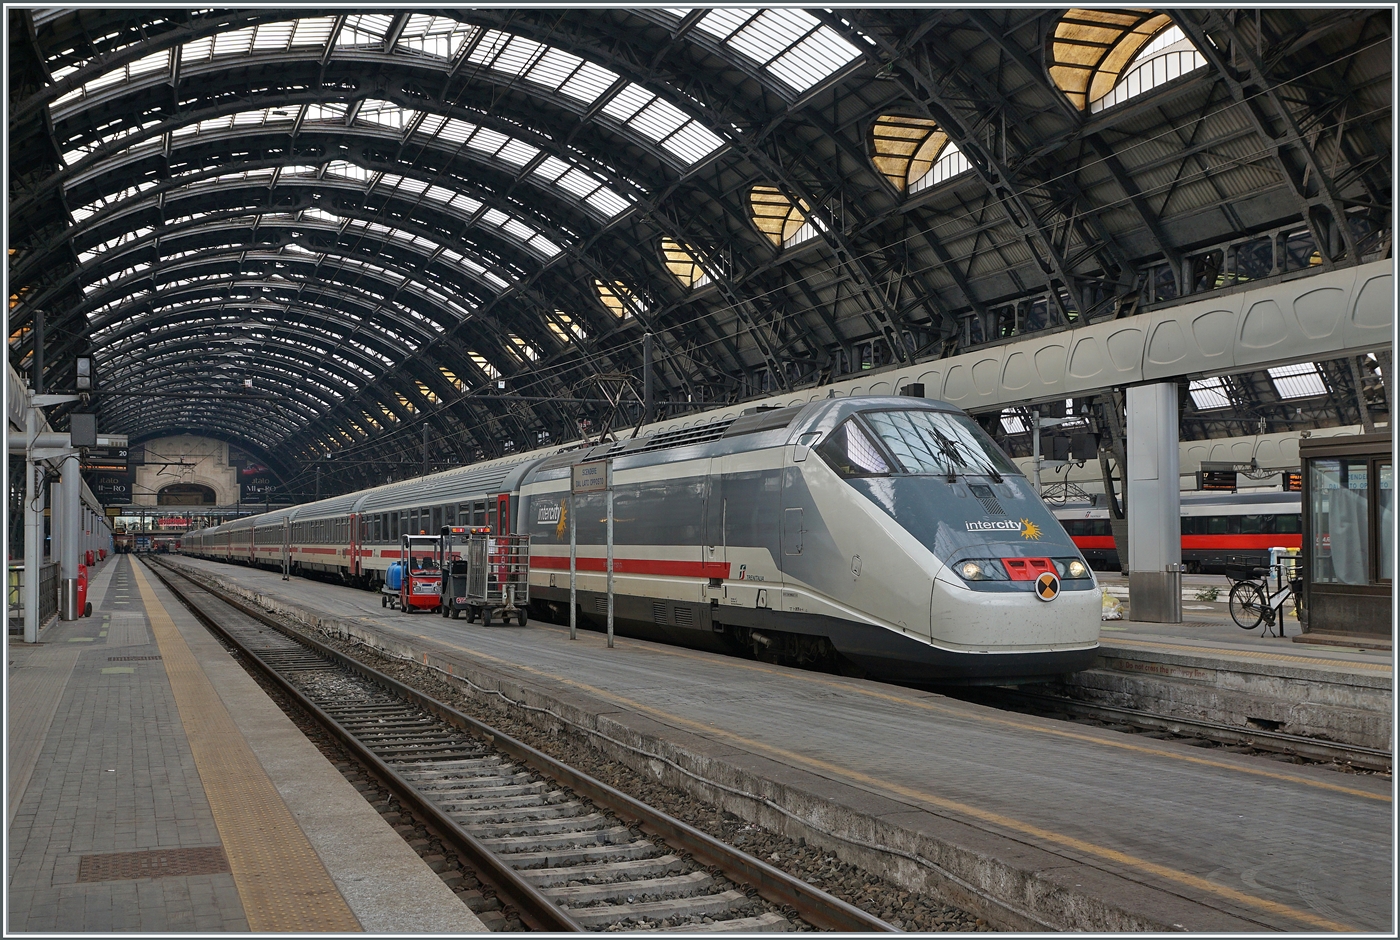 Mit zwei E 414 Triebköpfen bestückt wartet ein FS Trenitalia Intercity in Milano auf die Abfahrt.

8. Nov. 2022